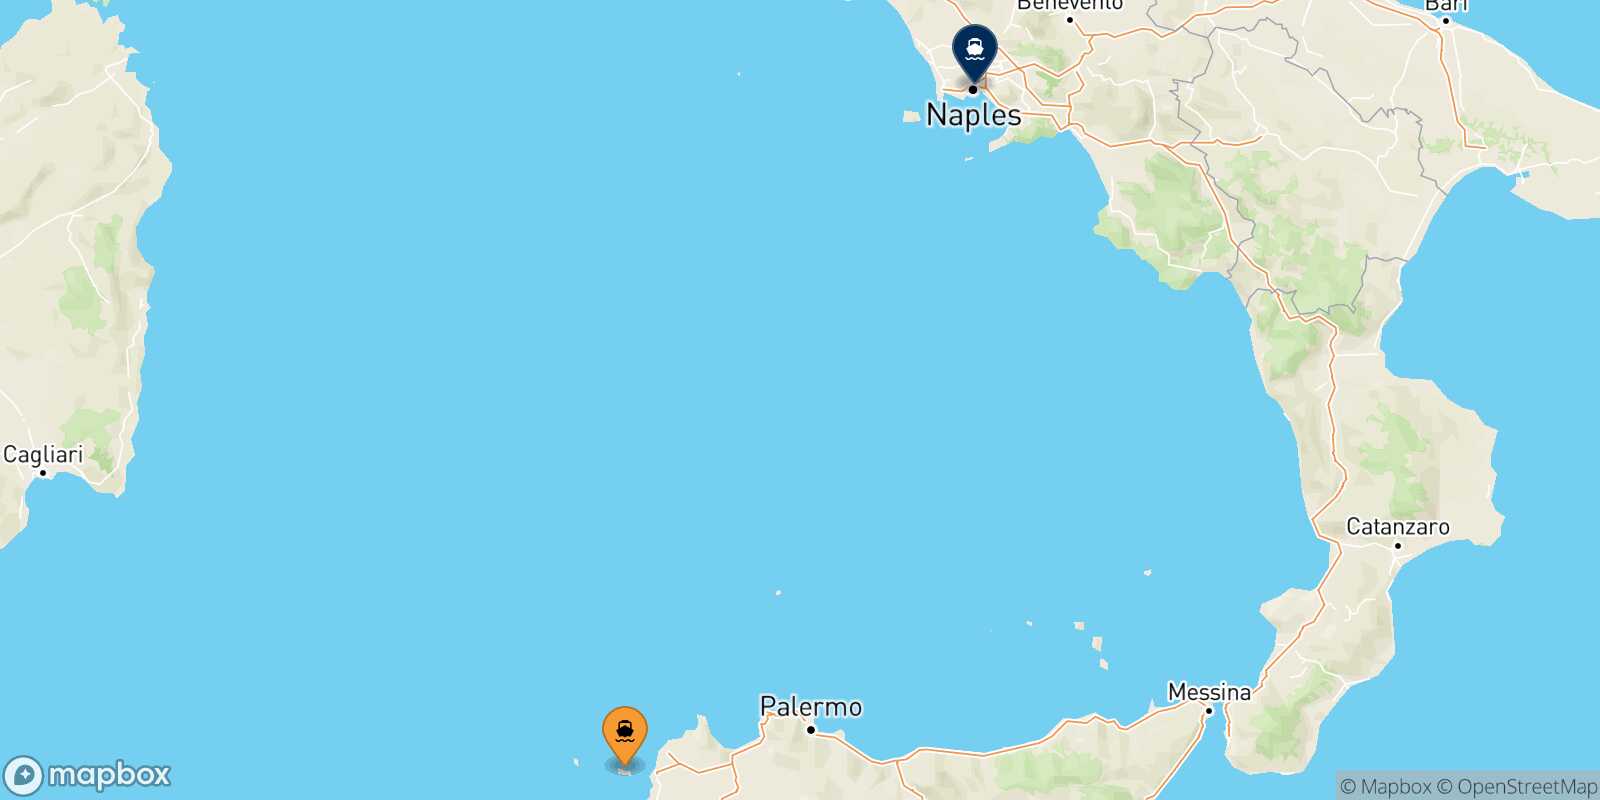 Mapa de la ruta Favignana Nápoles Beverello